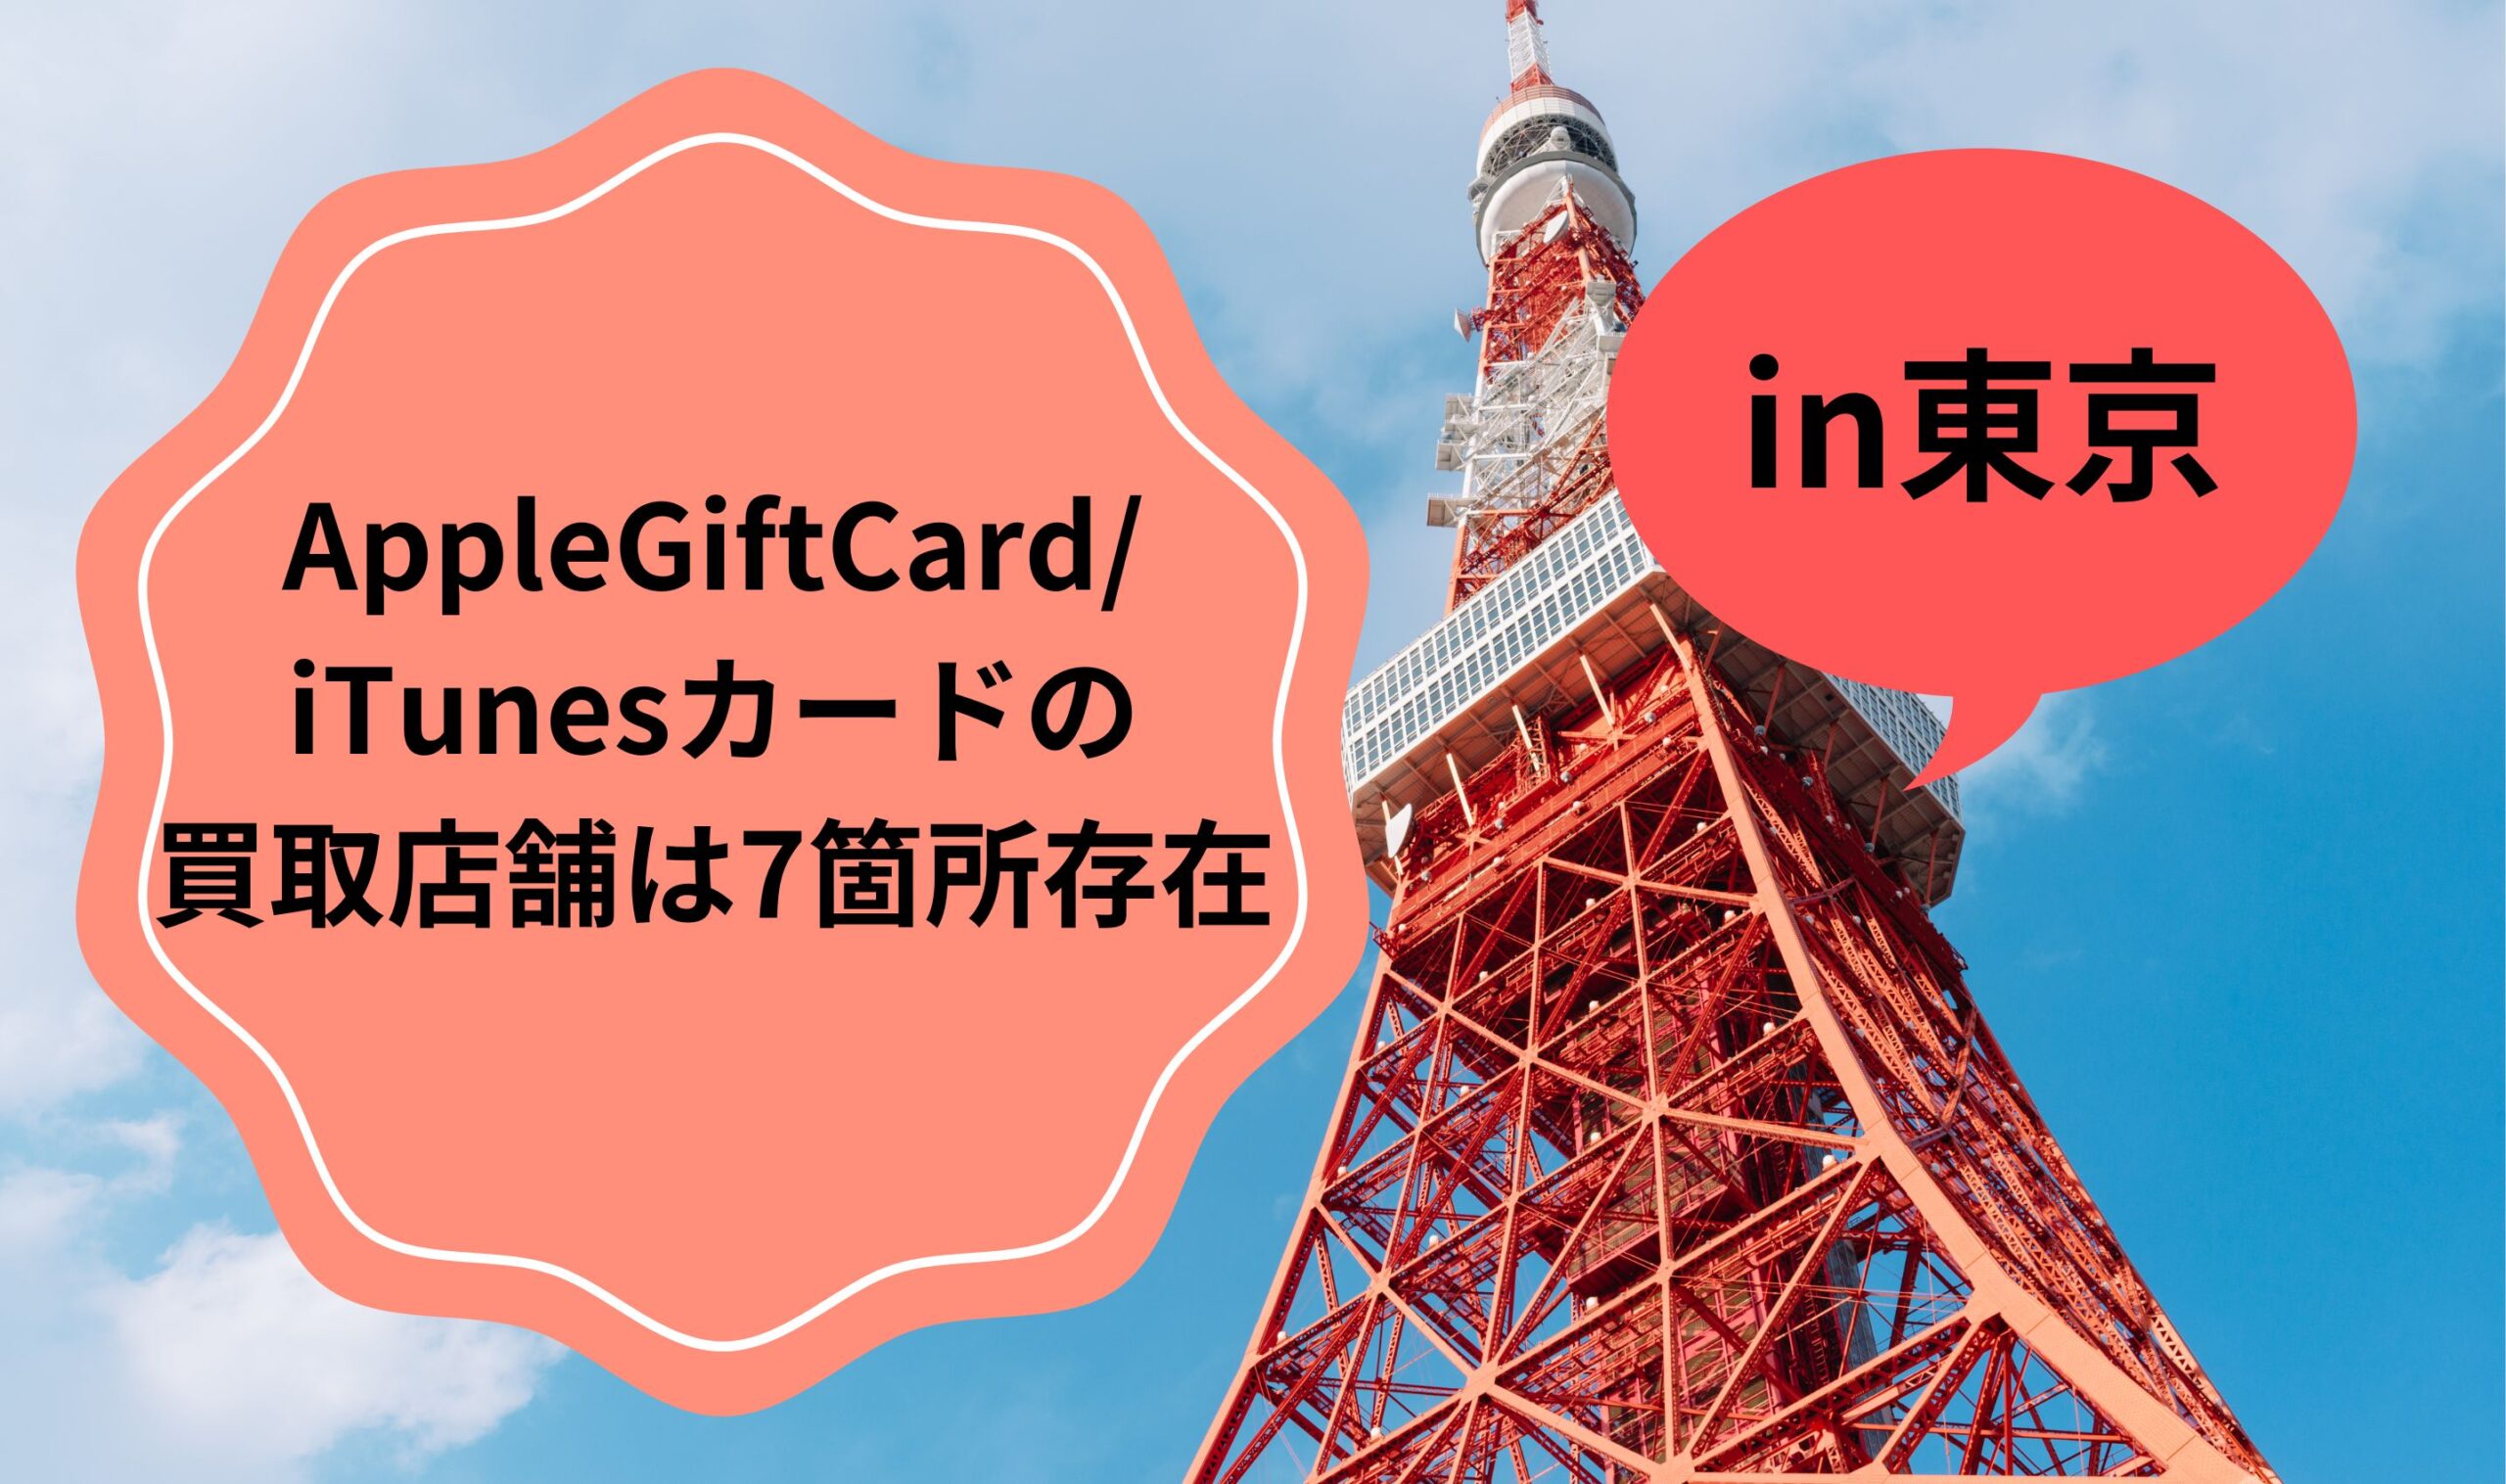 AppleGiftCard/iTunesカードの買取店舗は東京に7箇所存在